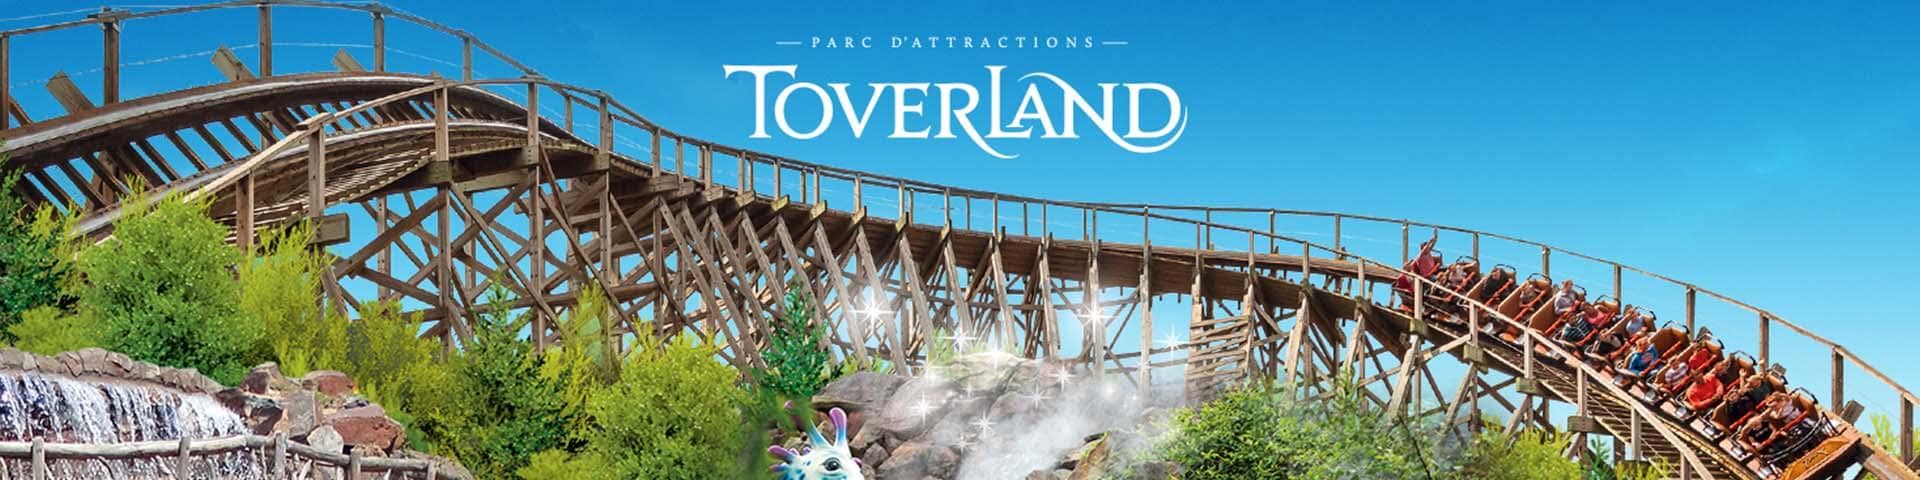 Freizeitpark Toverland